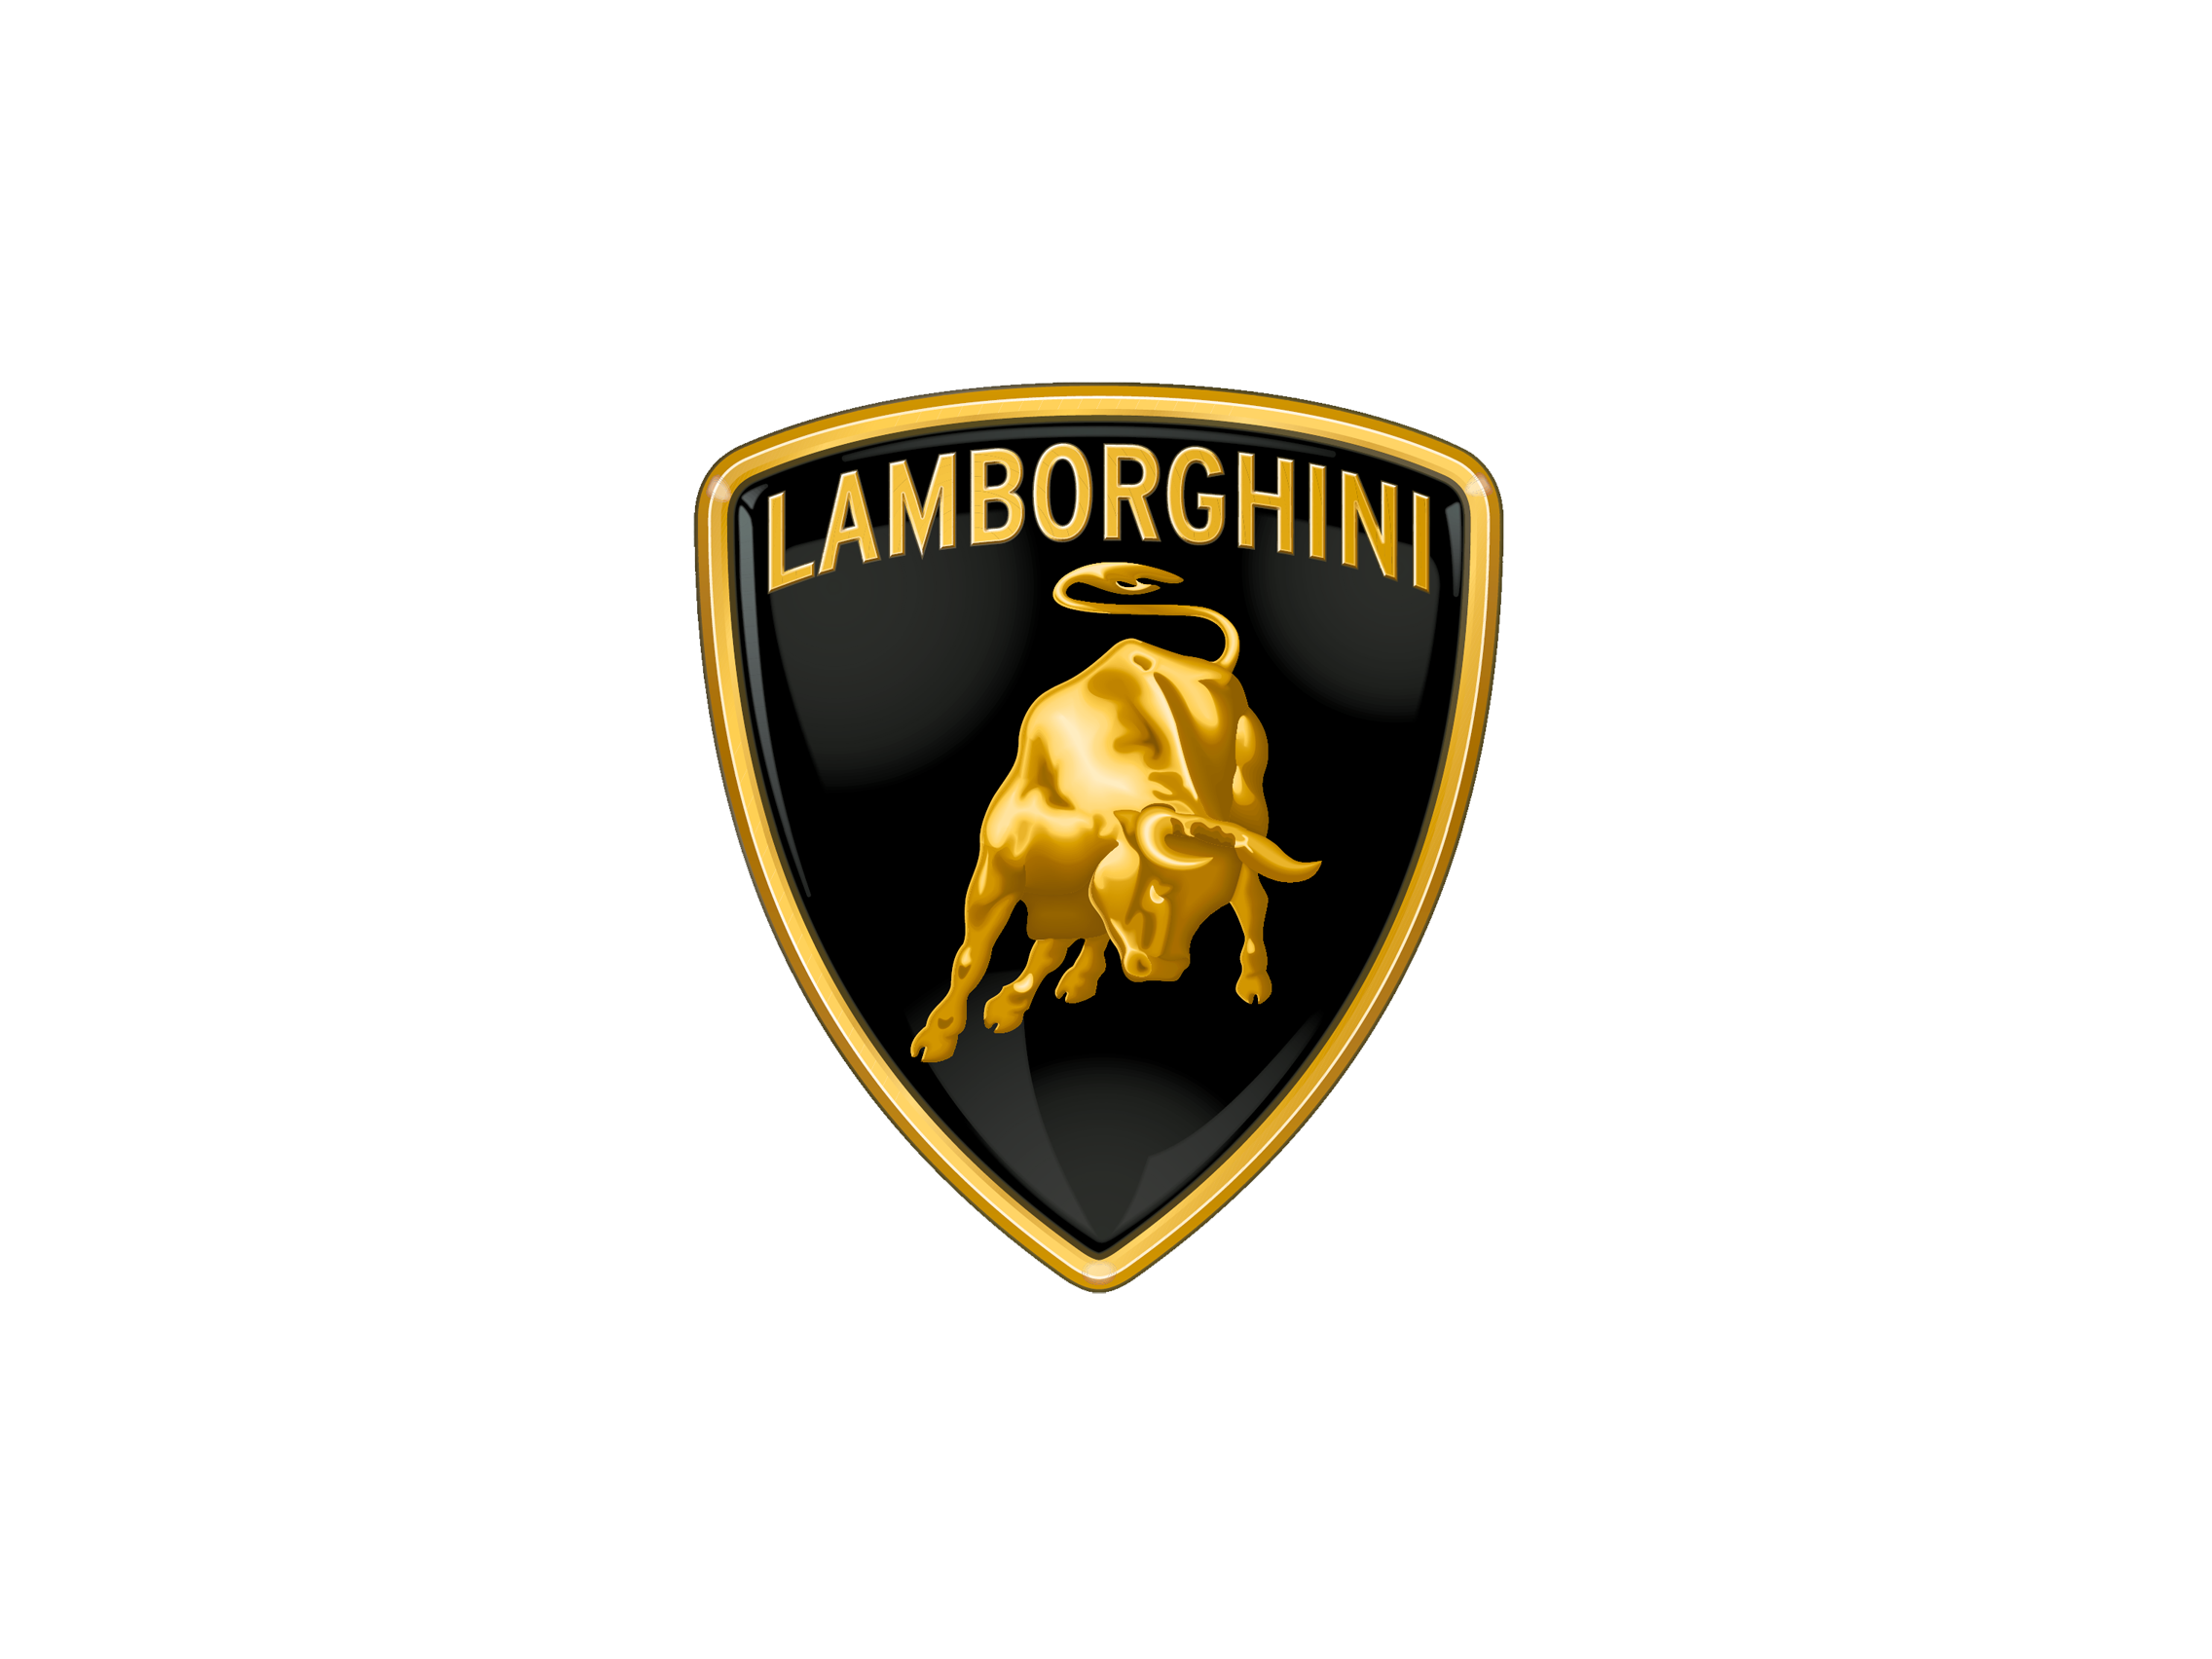 Lamborghini Logo, Transparent Lamborghini Car Symbol Png Images - Free  Transparent PNG Logos